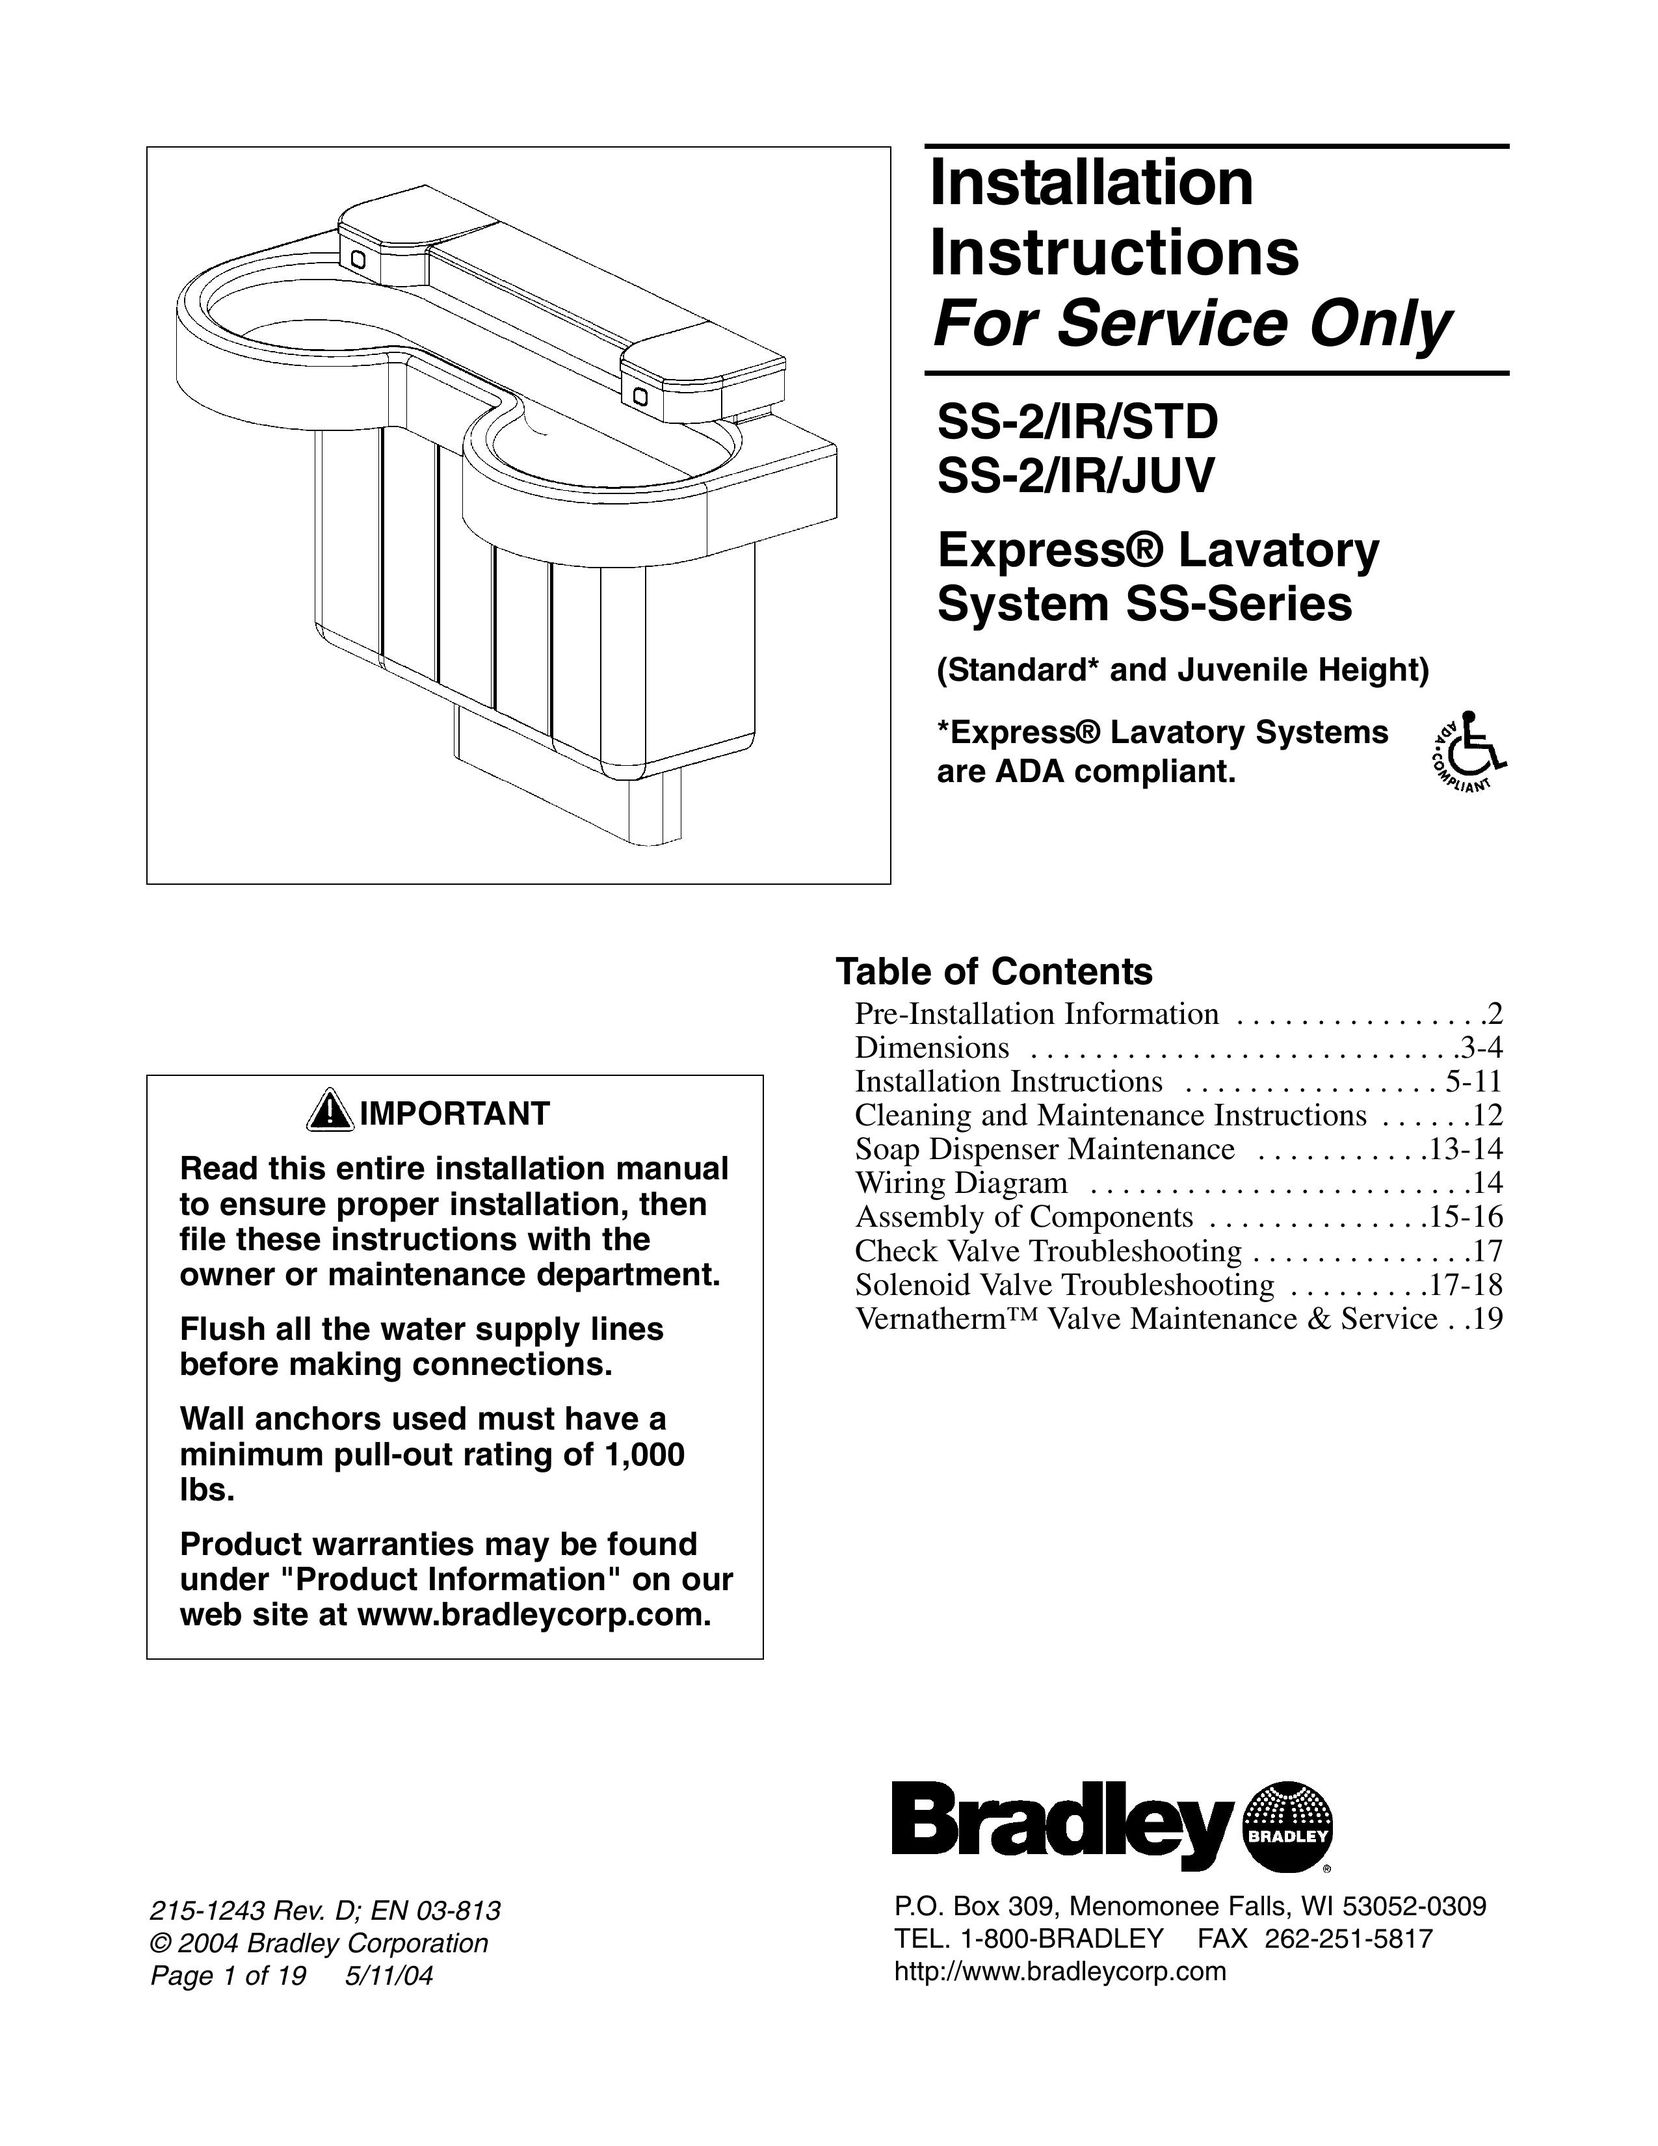 Bradley Smoker SS-2/IR/JUV Plumbing Product User Manual